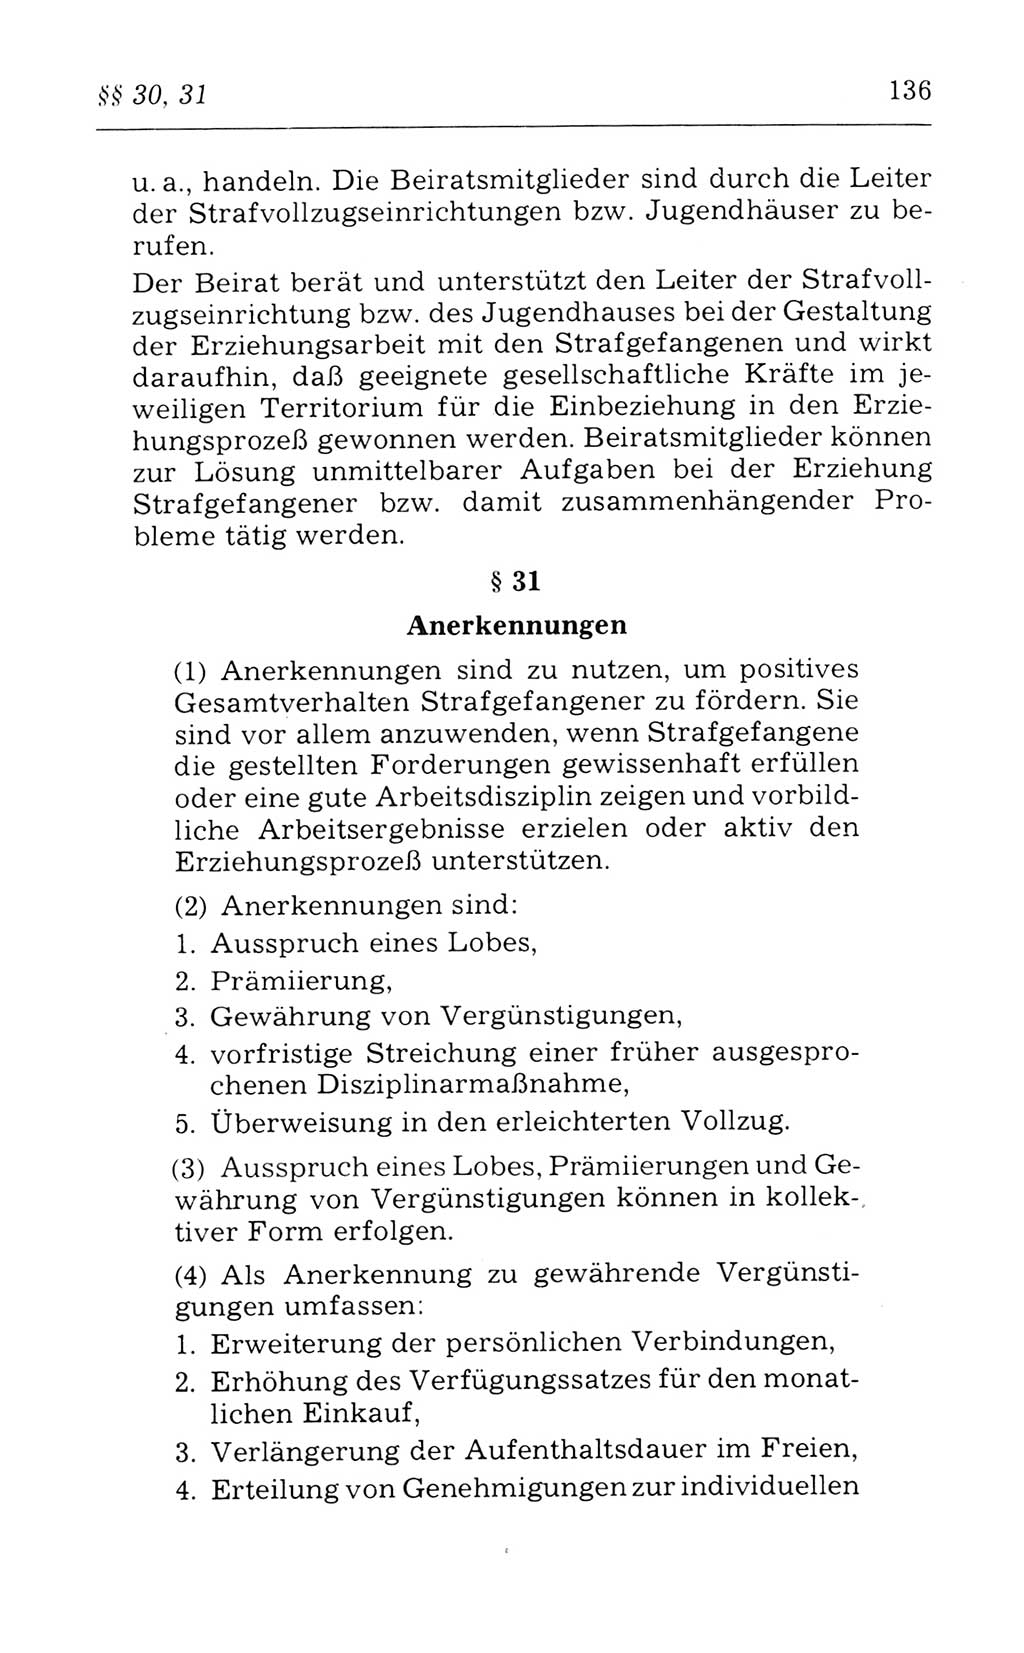 Kommentar zum Strafvollzugsgesetz [(StVG) Deutsche Demokratische Republik (DDR)] 1980, Seite 136 (Komm. StVG DDR 1980, S. 136)